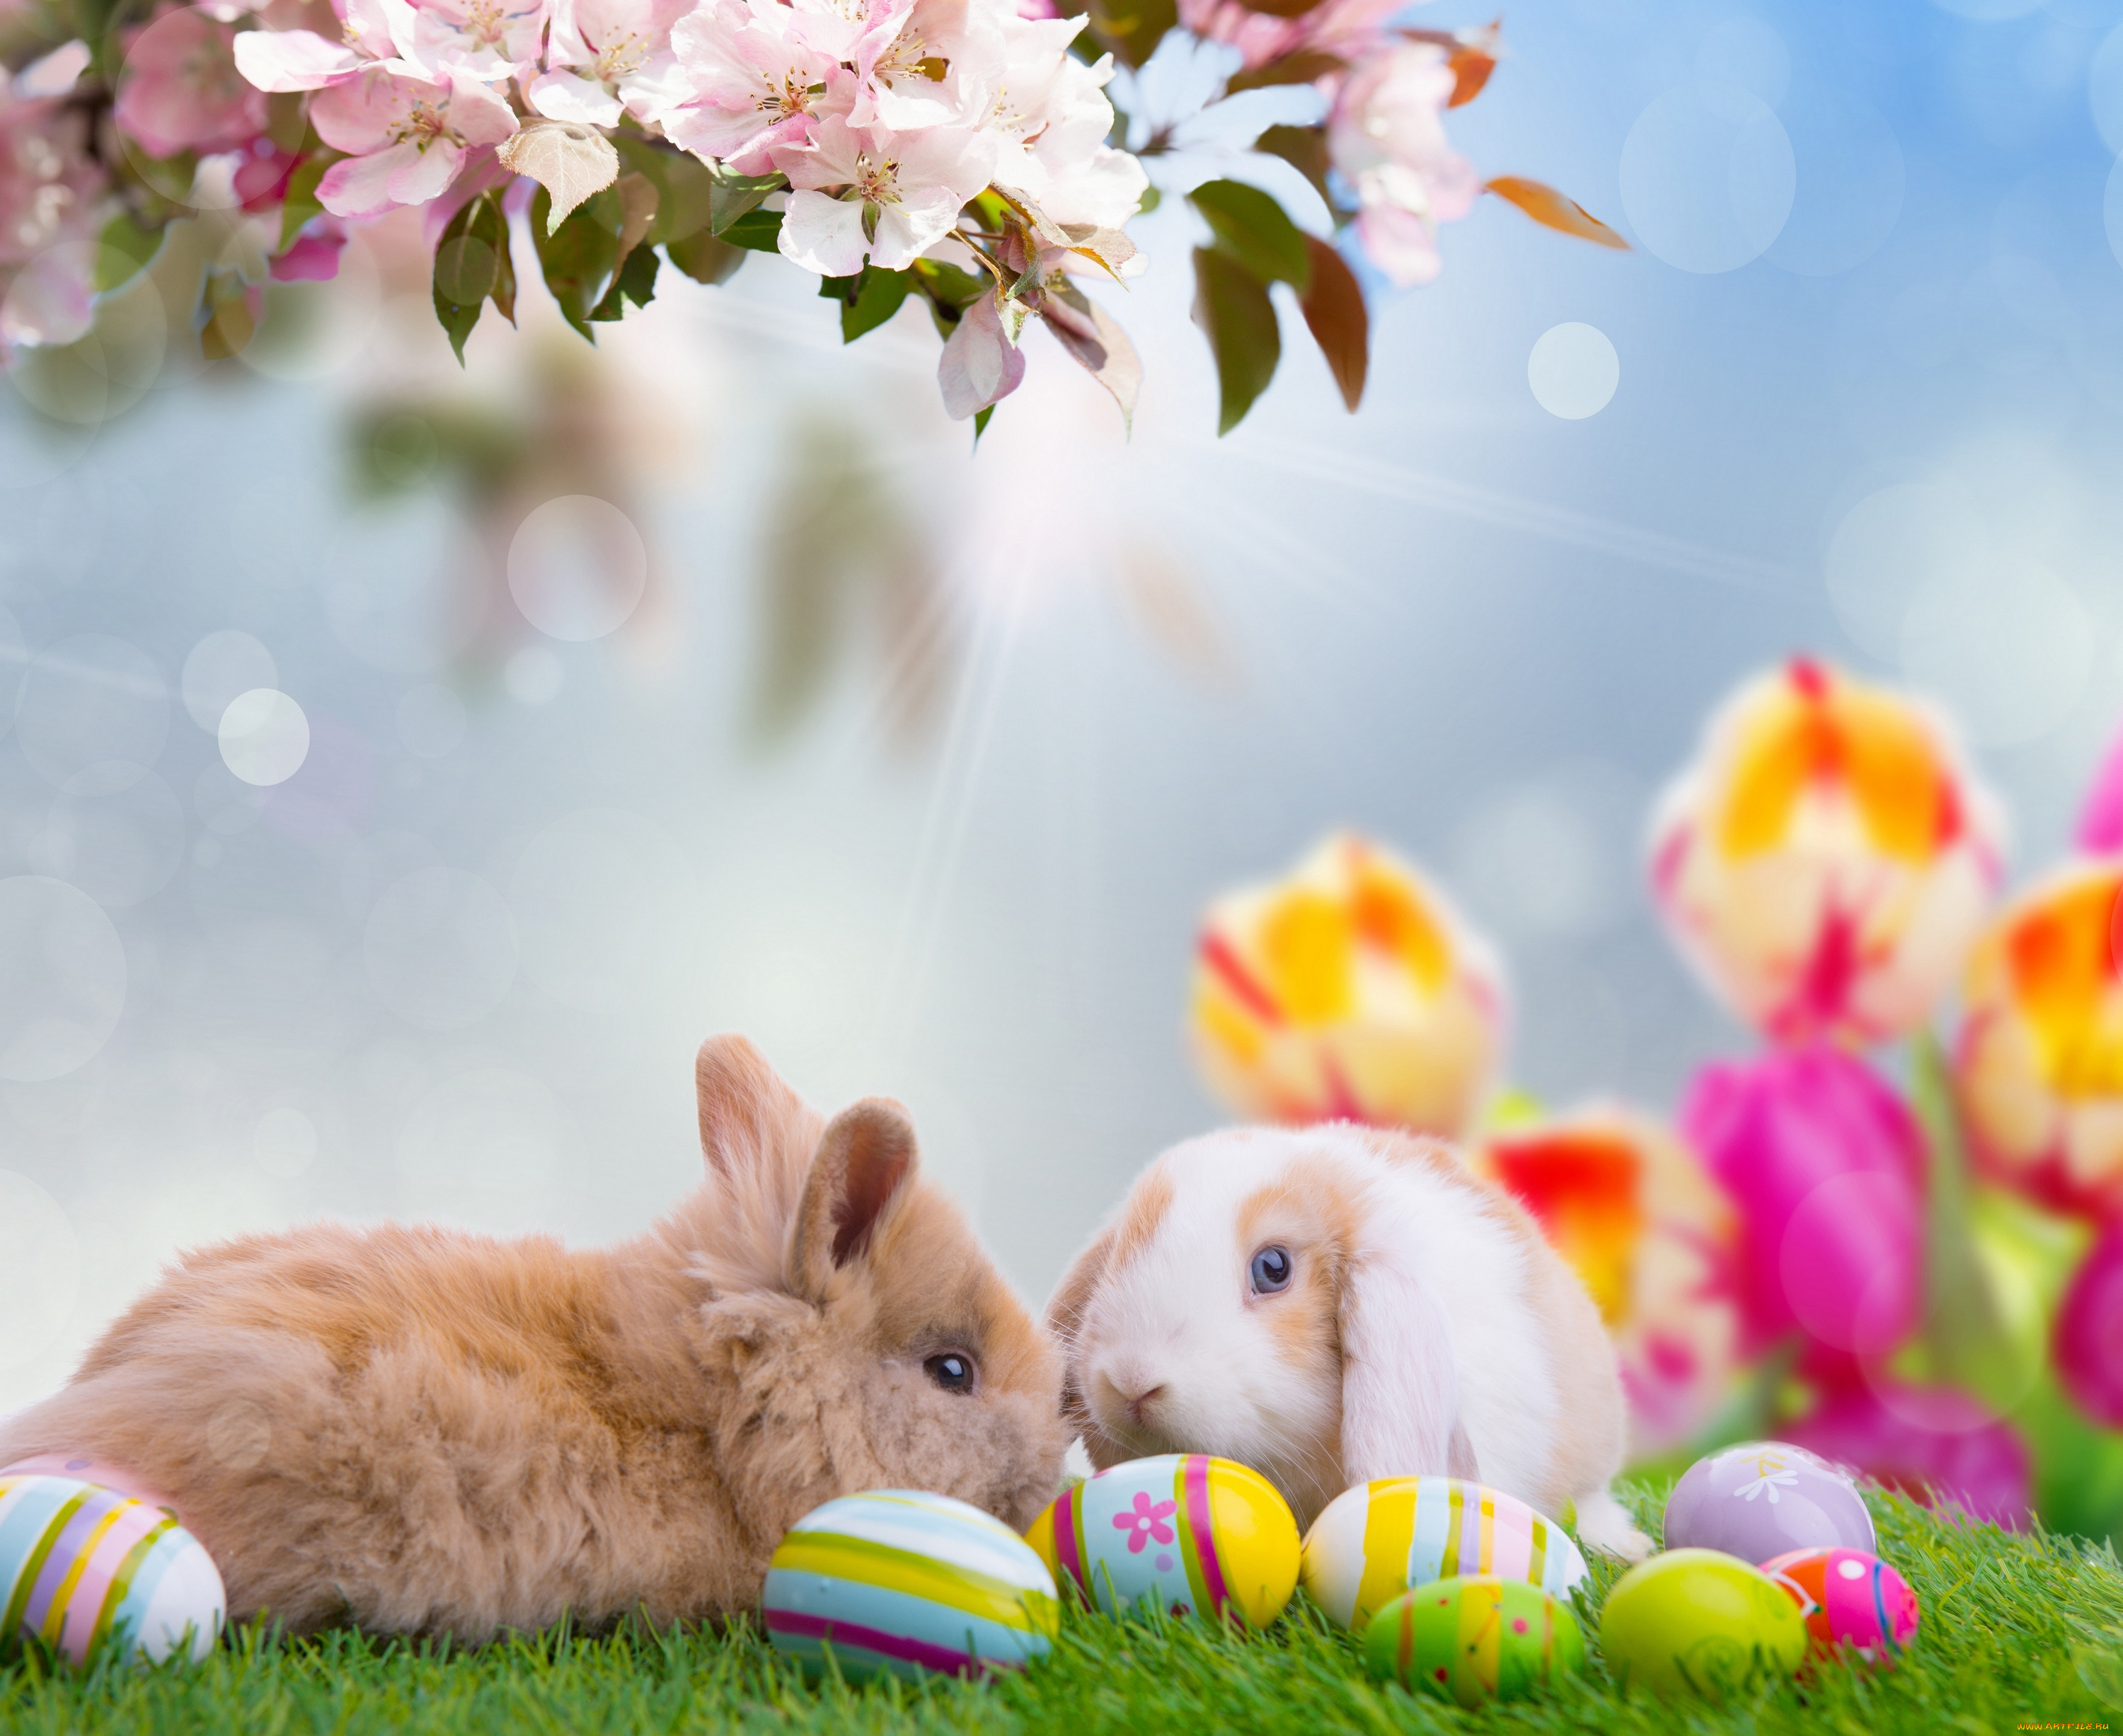 животные, кролики, , зайцы, доски, природа, весна, easter, облака, небо, пасха, праздник, тележка, нарциссы, цветы